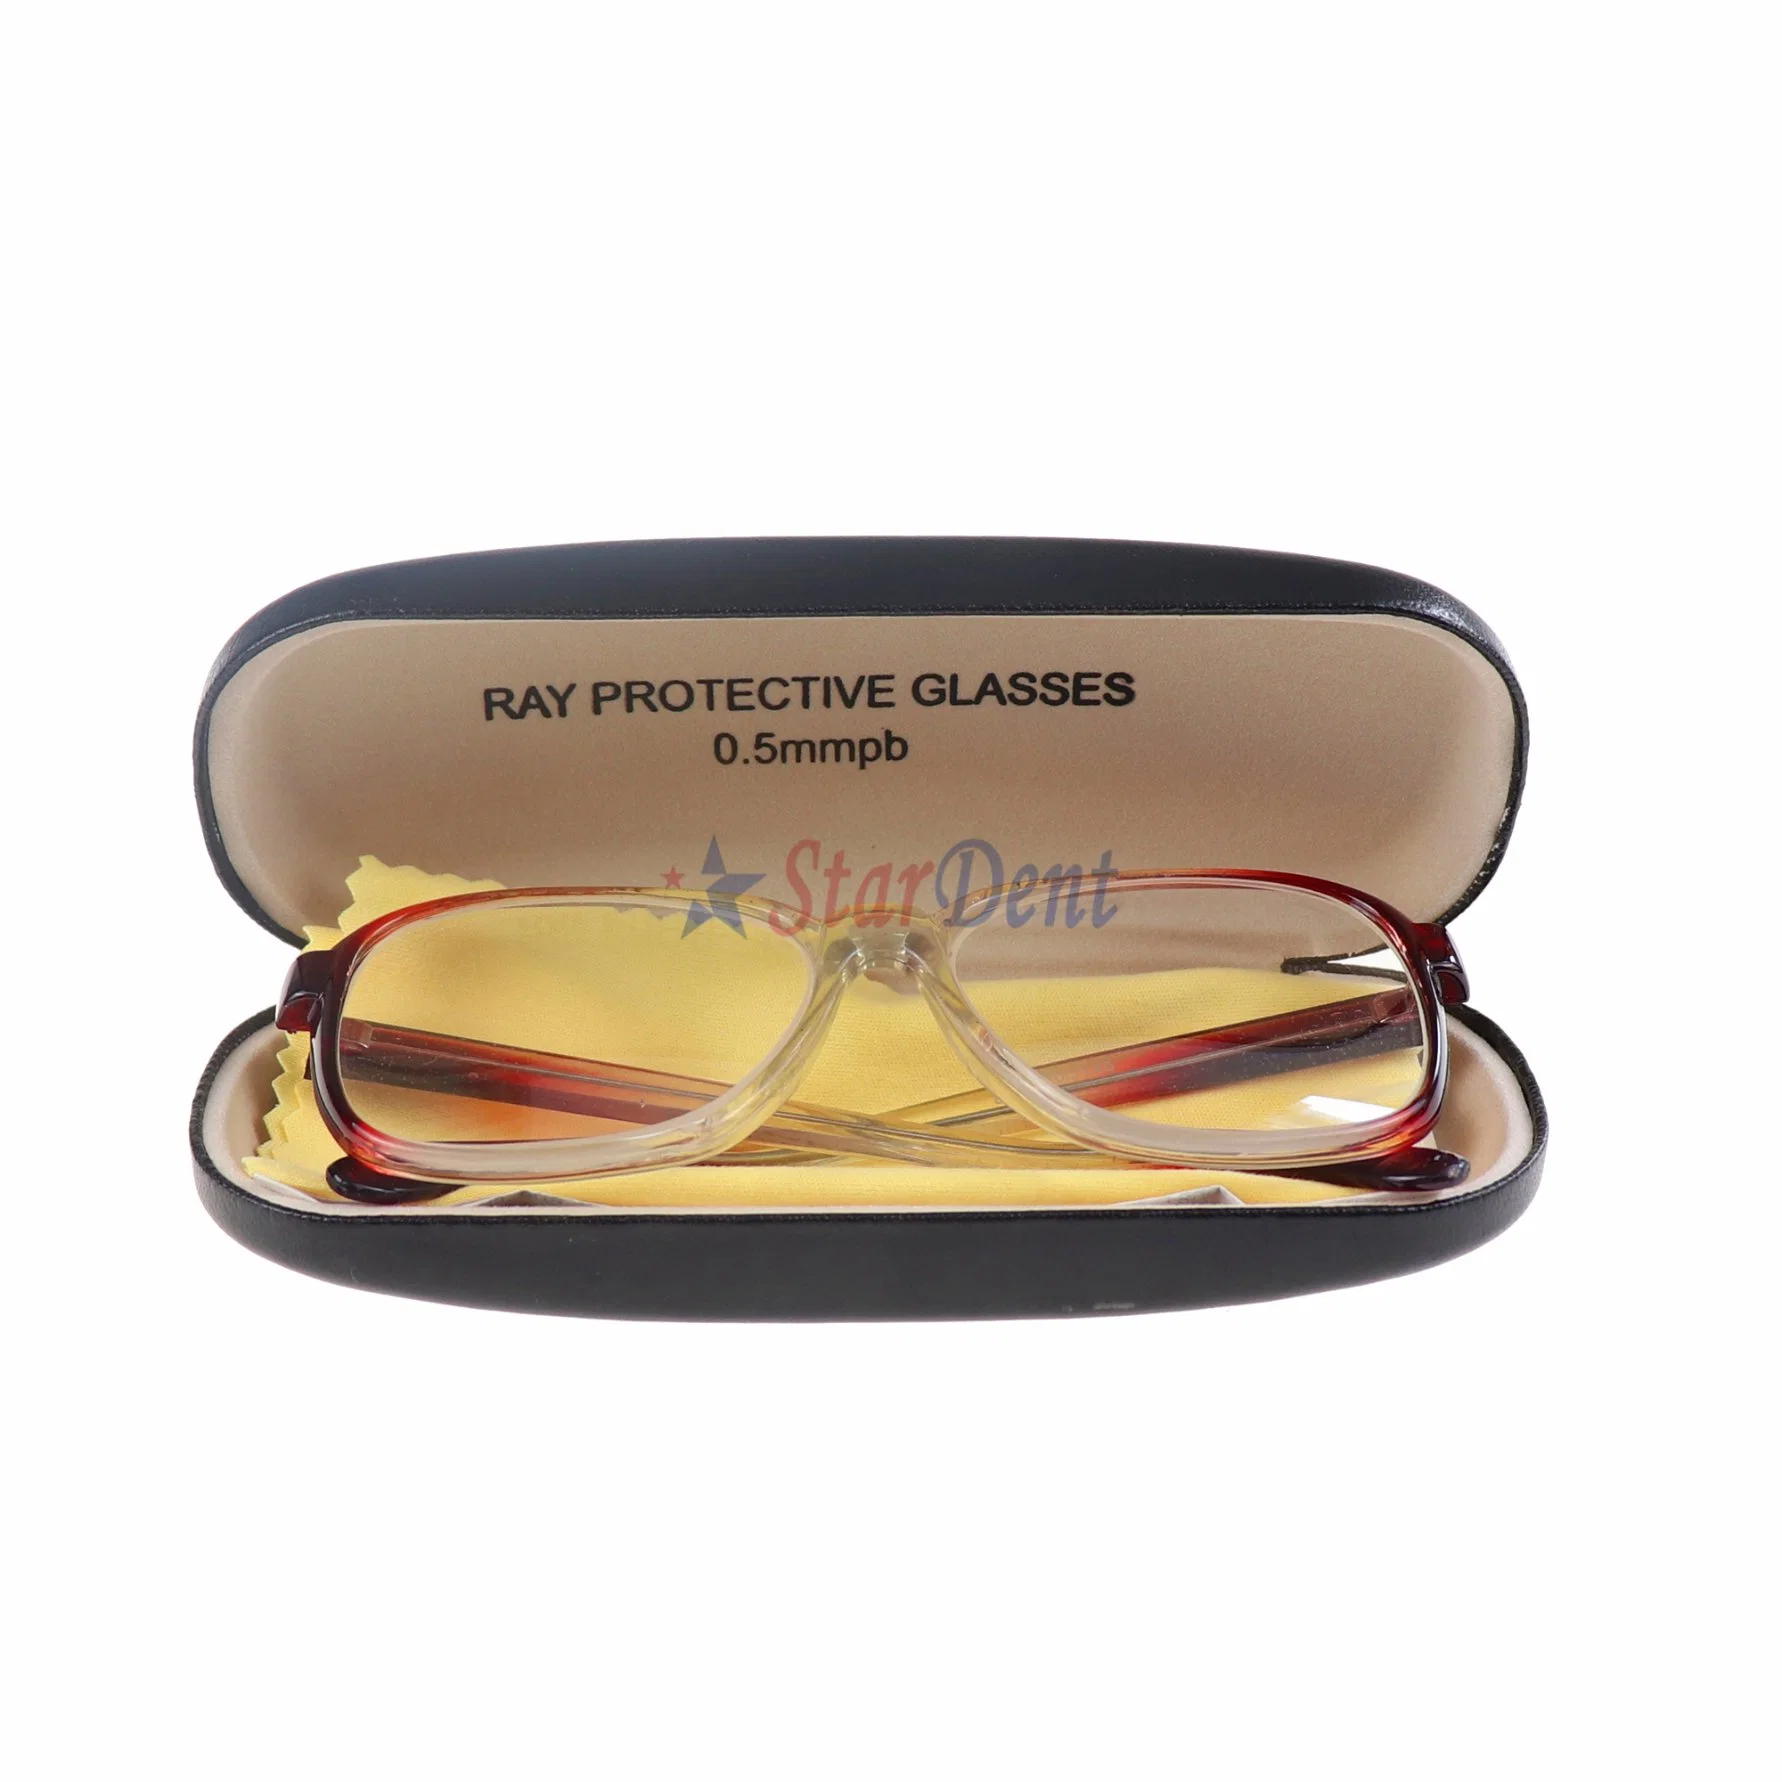 Professionnel de haute qualité de soins dentaires Super-Flexible médicales des rayons X des lunettes de protection pour protéger les yeux